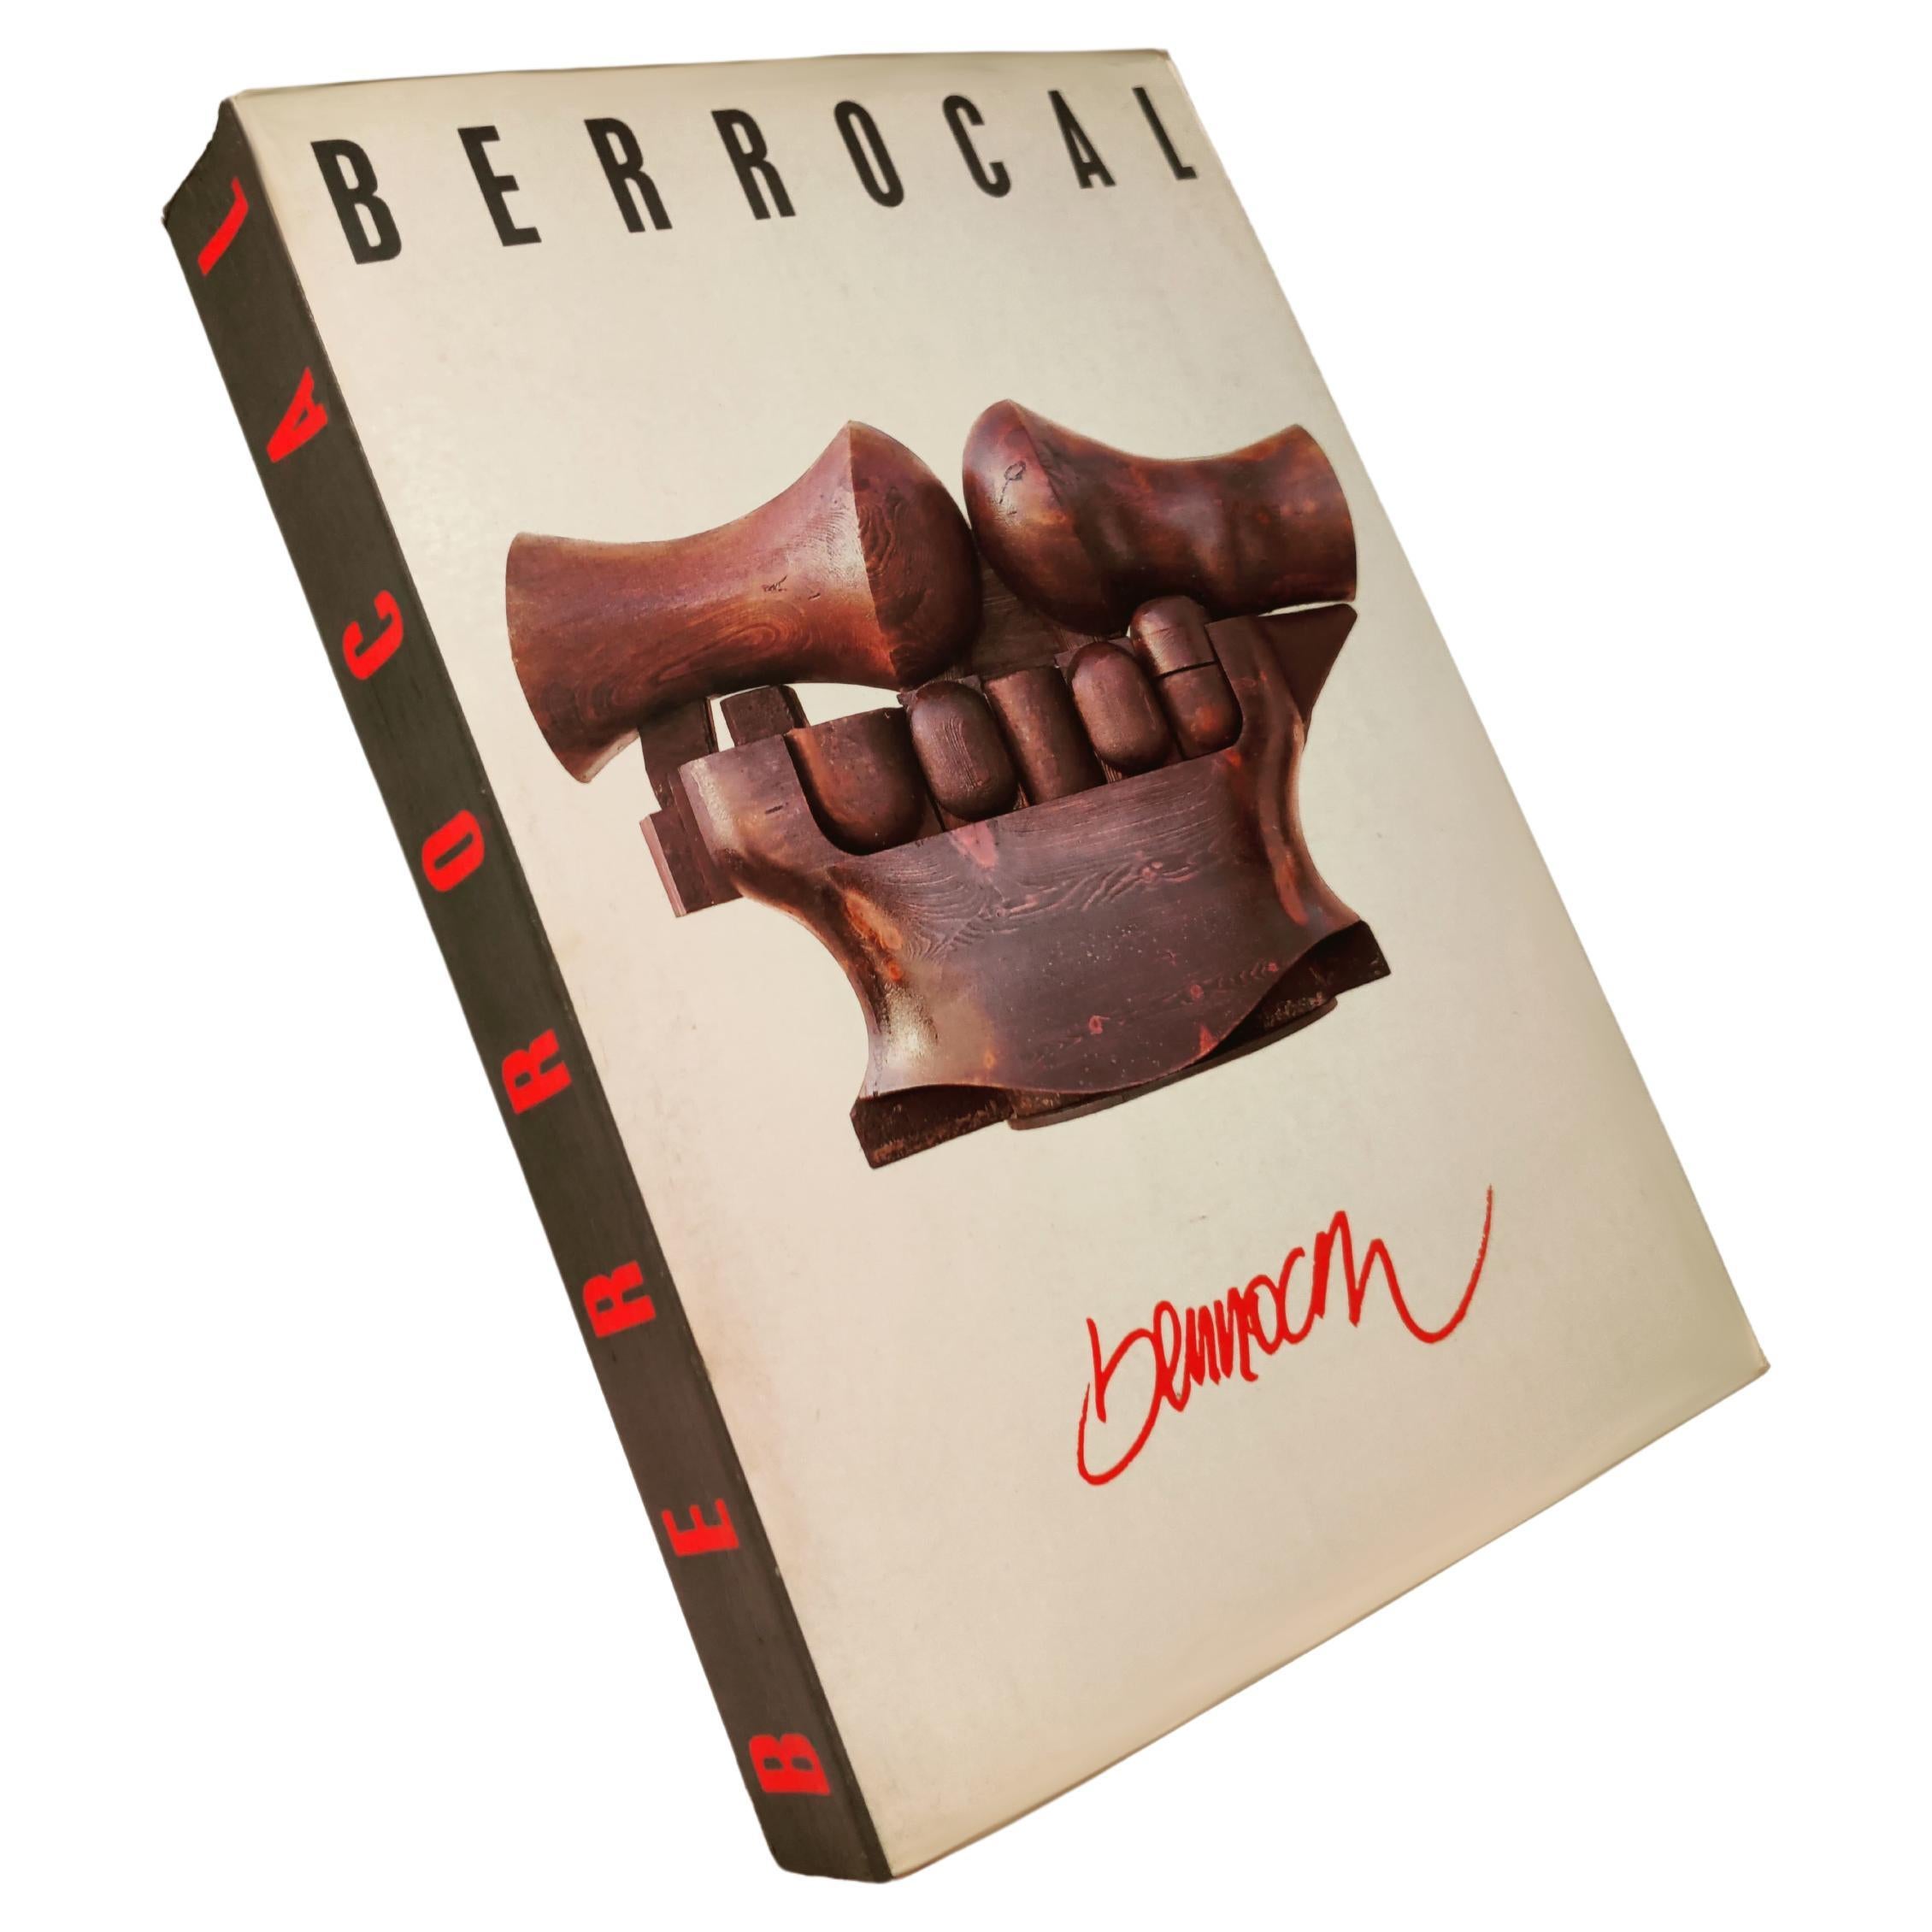 Exklusives Buch Antológica Berrocal 1955- 84 Skulpturen und Werke von Miguel Berrocal